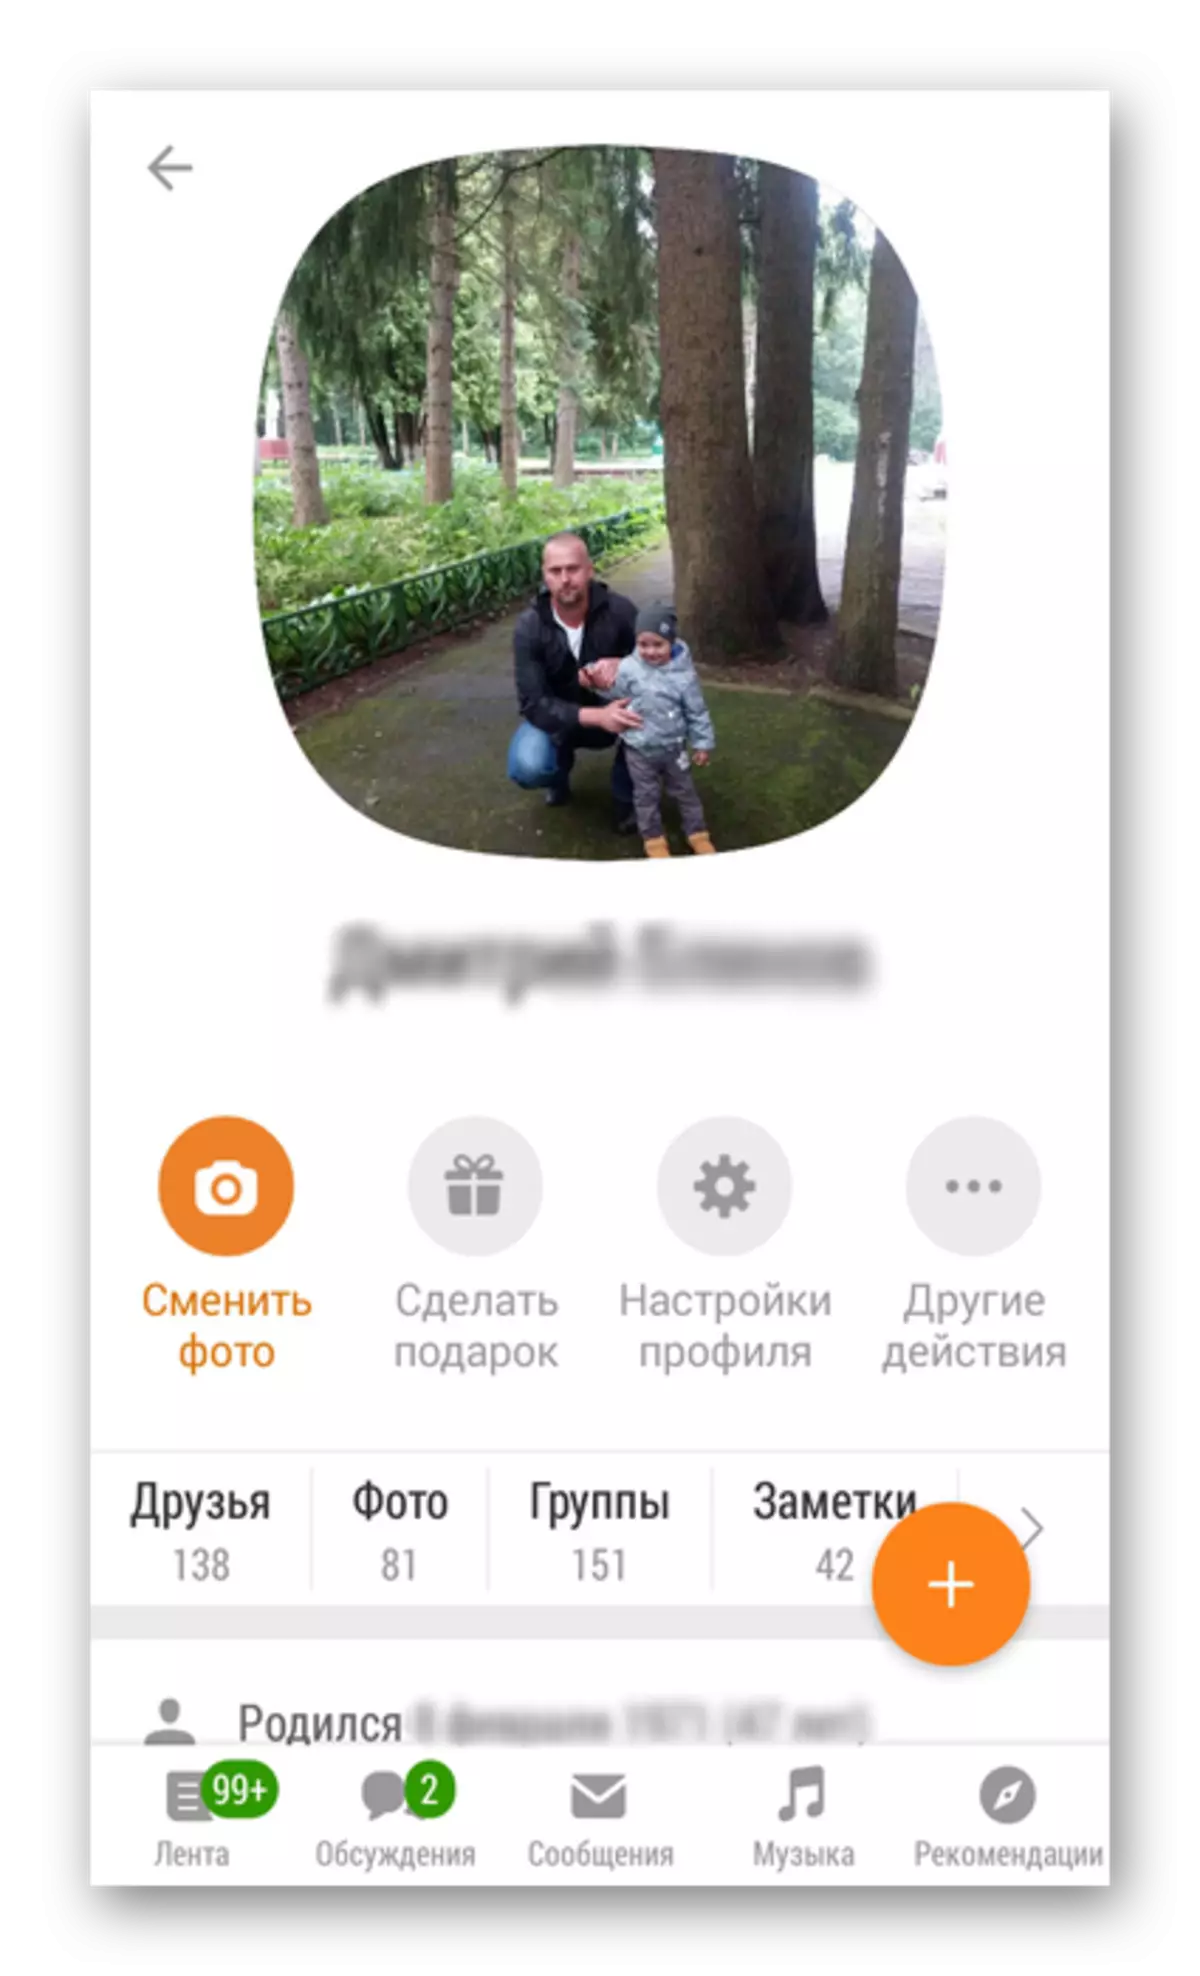 Profyl iepene yn odnoklassniki app